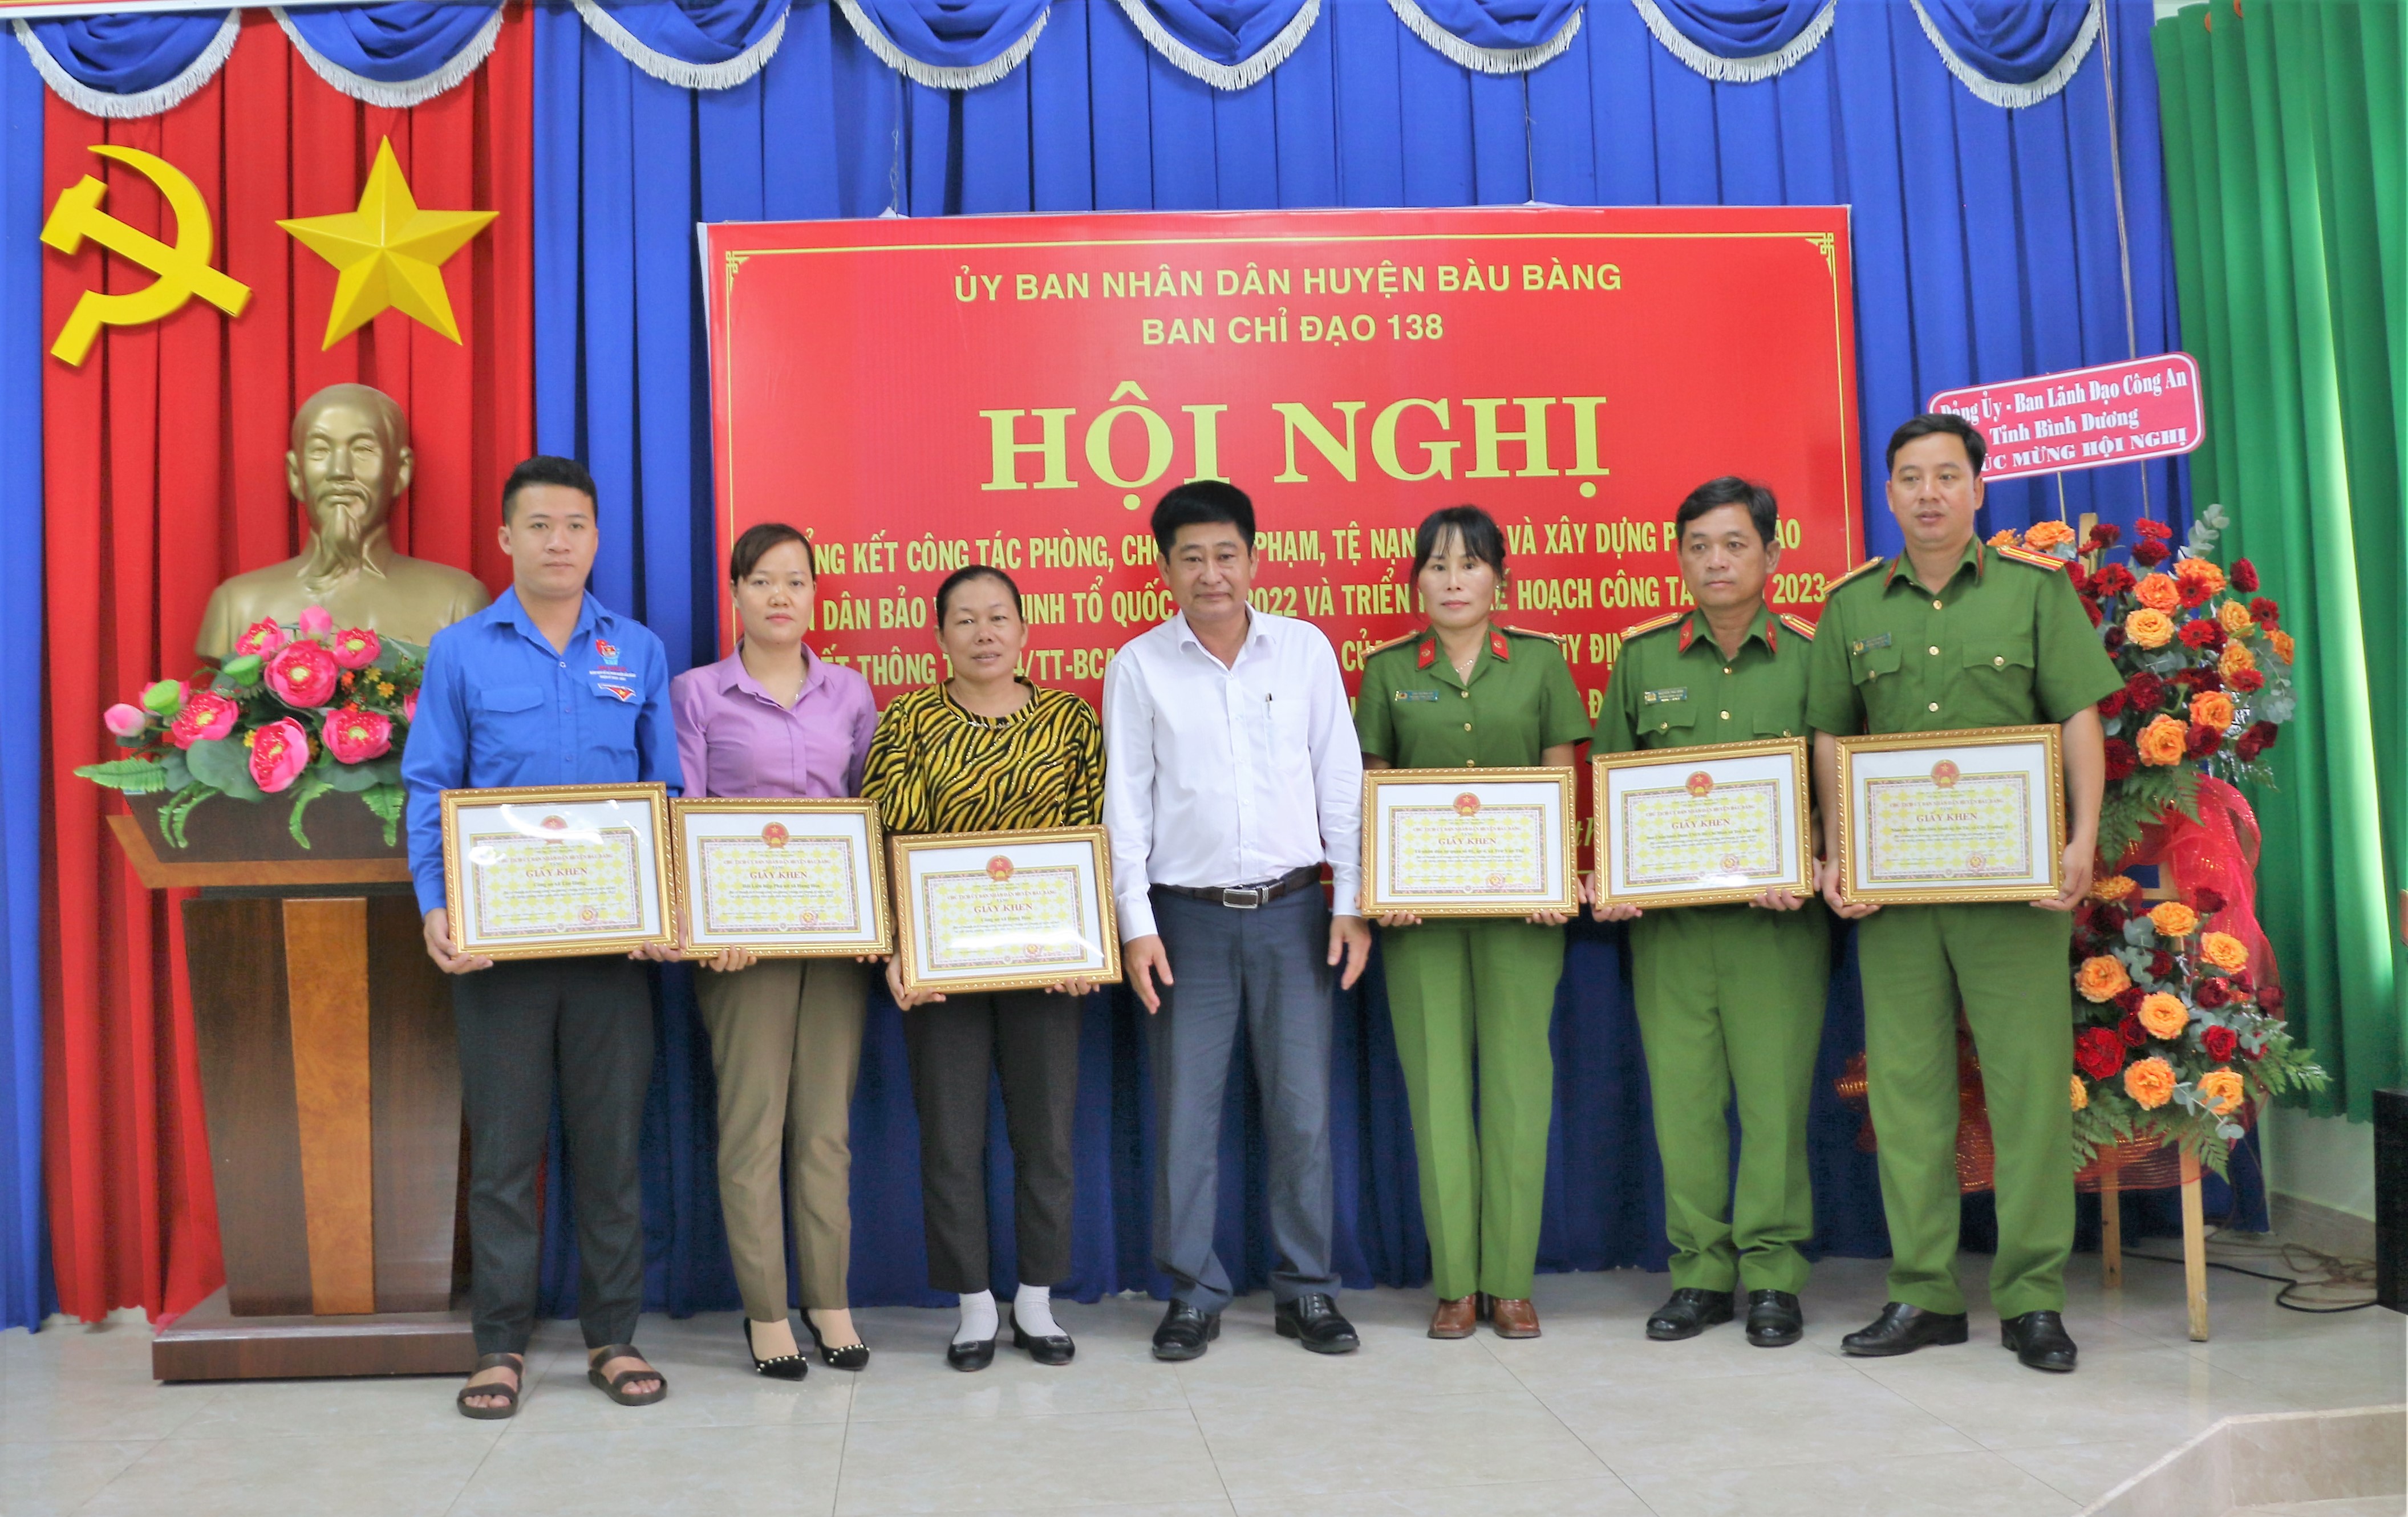 Ông Nguyễn Phú Cường - Phó chủ tịch UBND huyện - trưởng BCĐ 138 huyện trao giấy khen cho các cá nhân có thành tích trong phong trào TDBVANTQ.